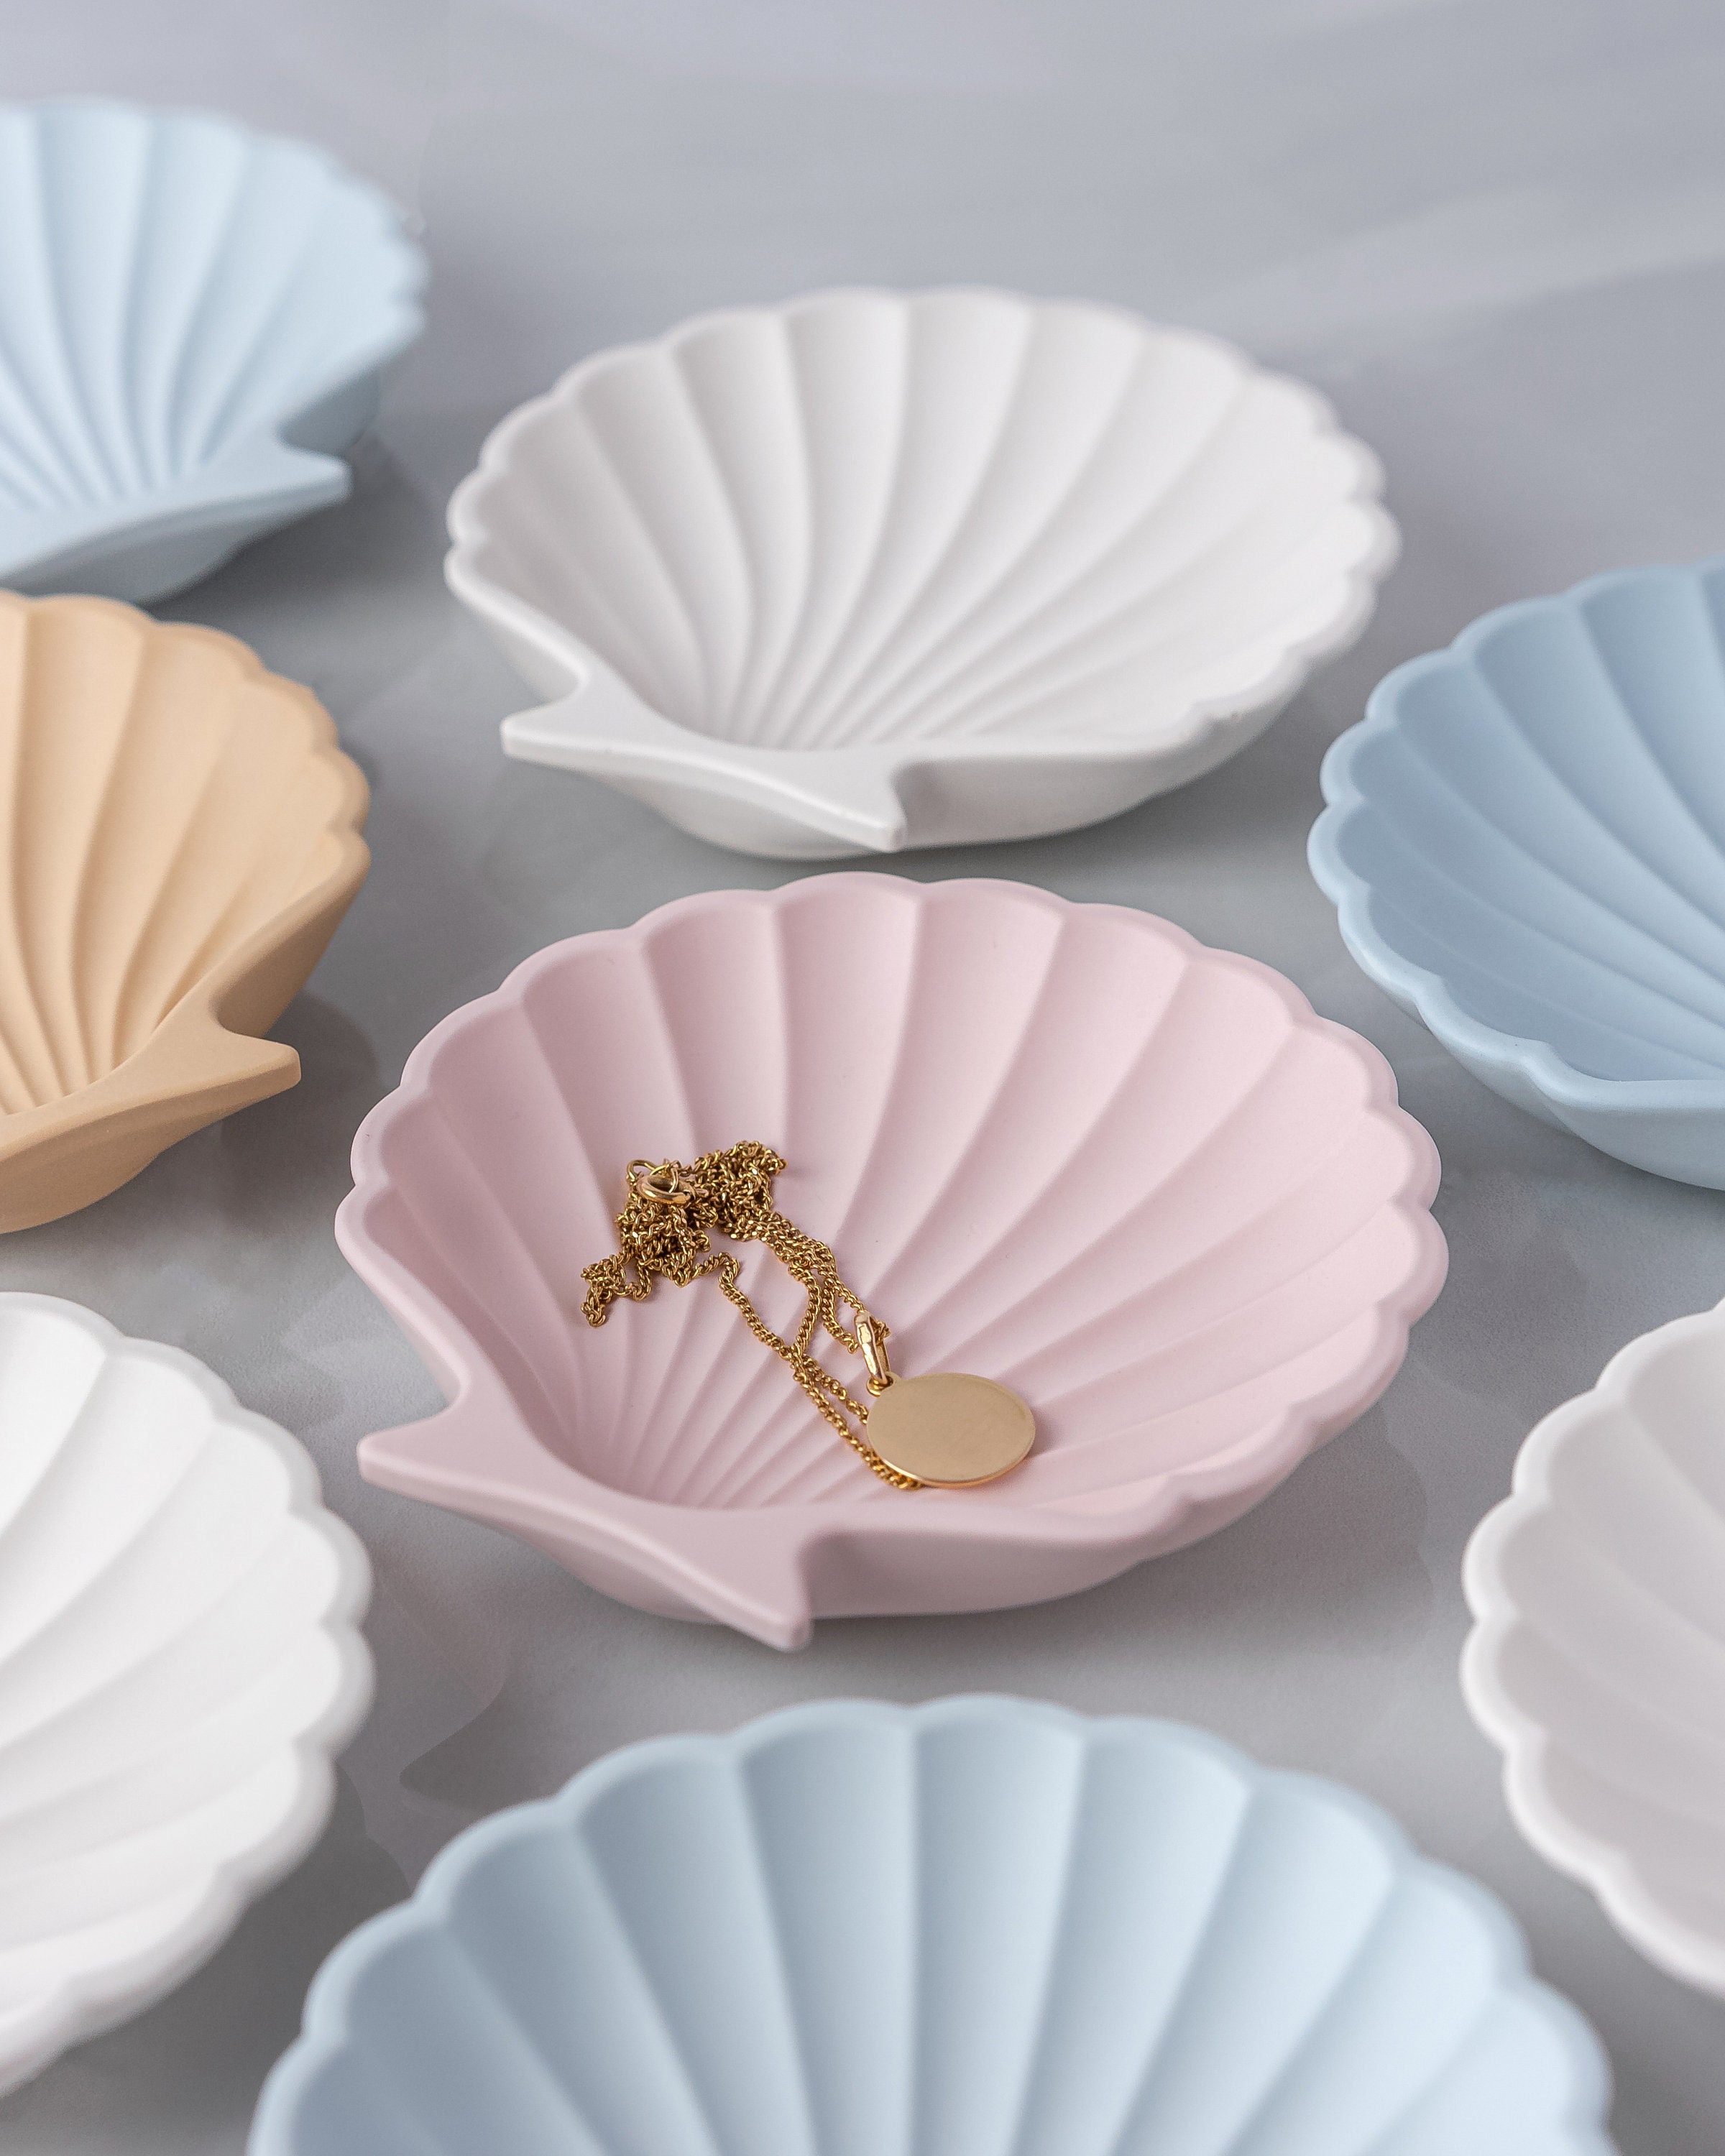 Sea Shell Trinket Dish Jewelry Tray Coastal Decor Pastel